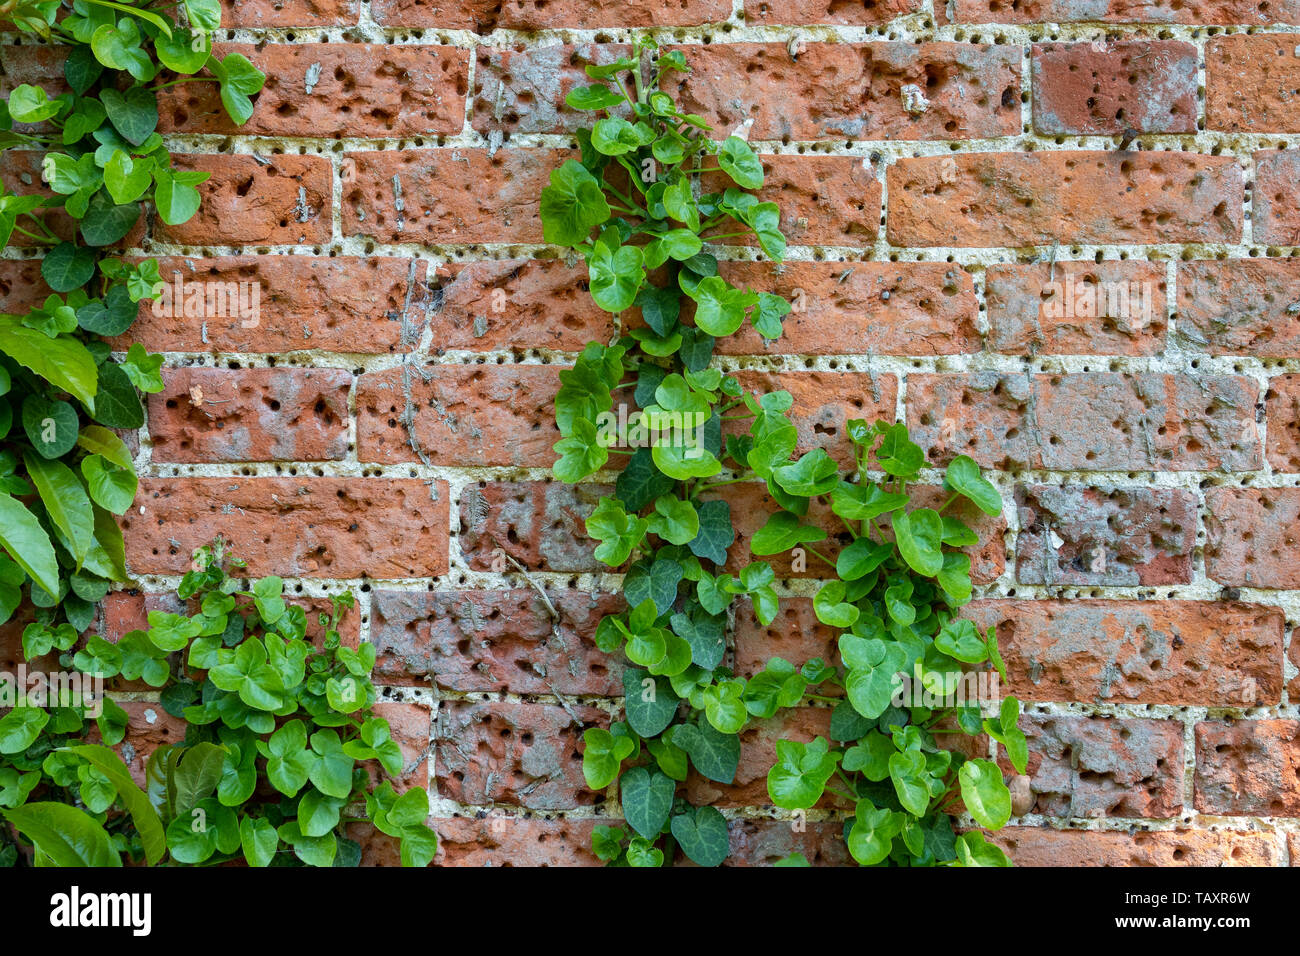 Detalle del antiguo muro de ladrillo rojo cubierto de pequeños agujeros de la repetición del uso de clavos de apoyo, también algunos hiedra creciendo sobre Foto de stock